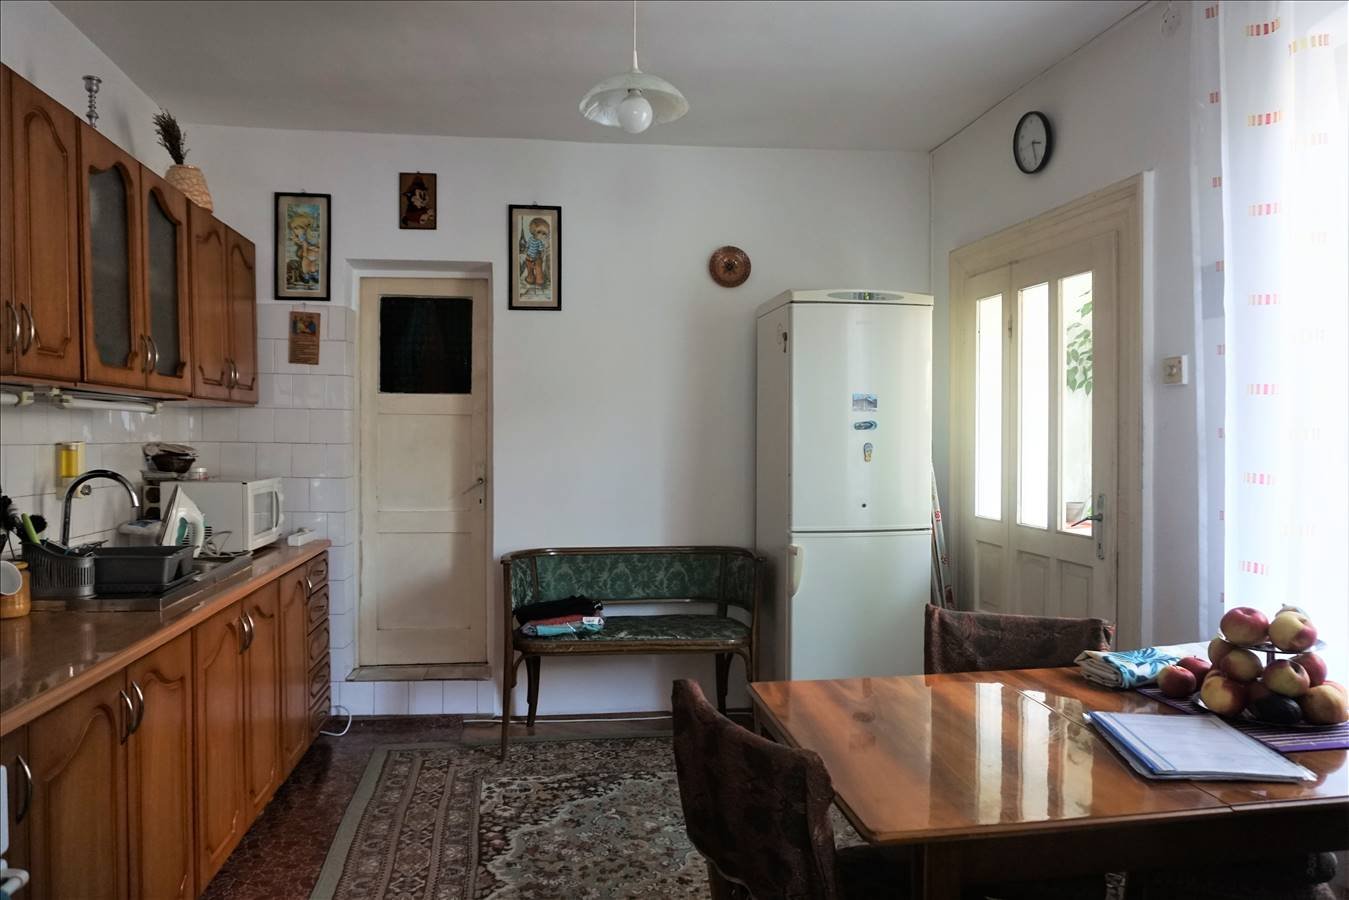 Casa 2 camere, singur in curte, Scheii Brasovului - imaginea 4